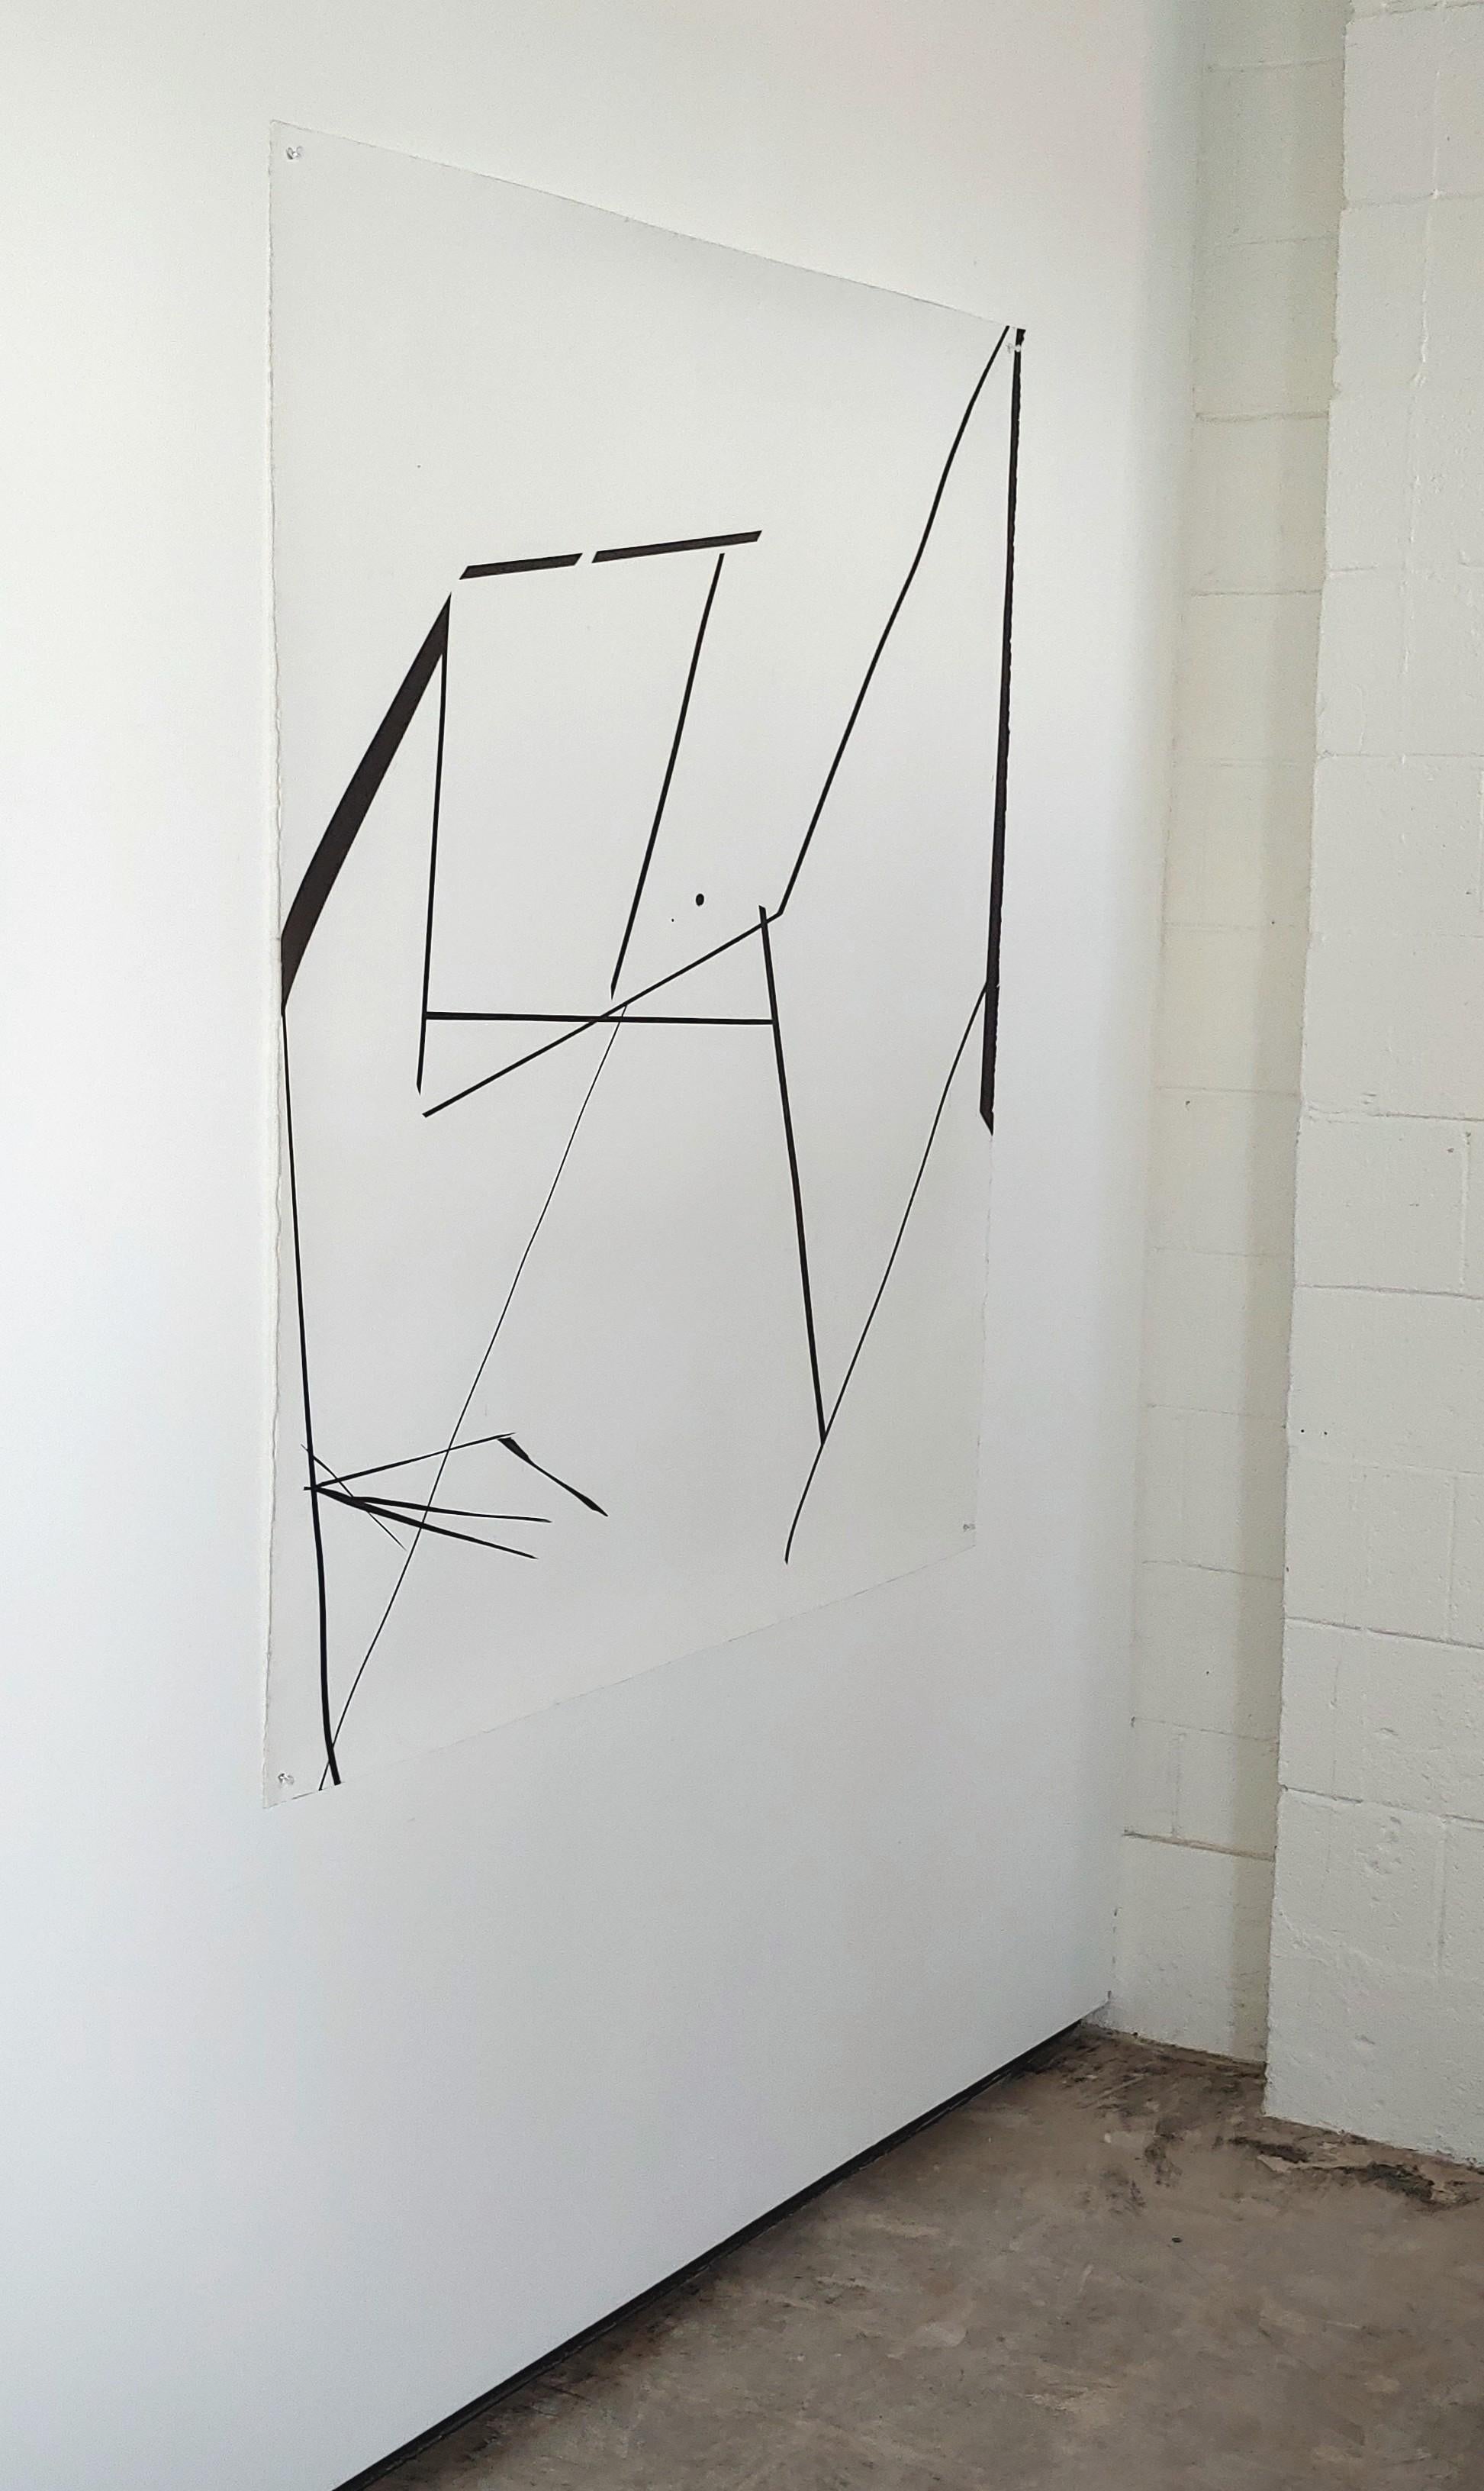 Geometrische, abstrakte, monochrome, schwarz-weiße, lineare, Tusche auf Papier Zeichnung (Abstrakt), Art, von Ronald Rupert Santos